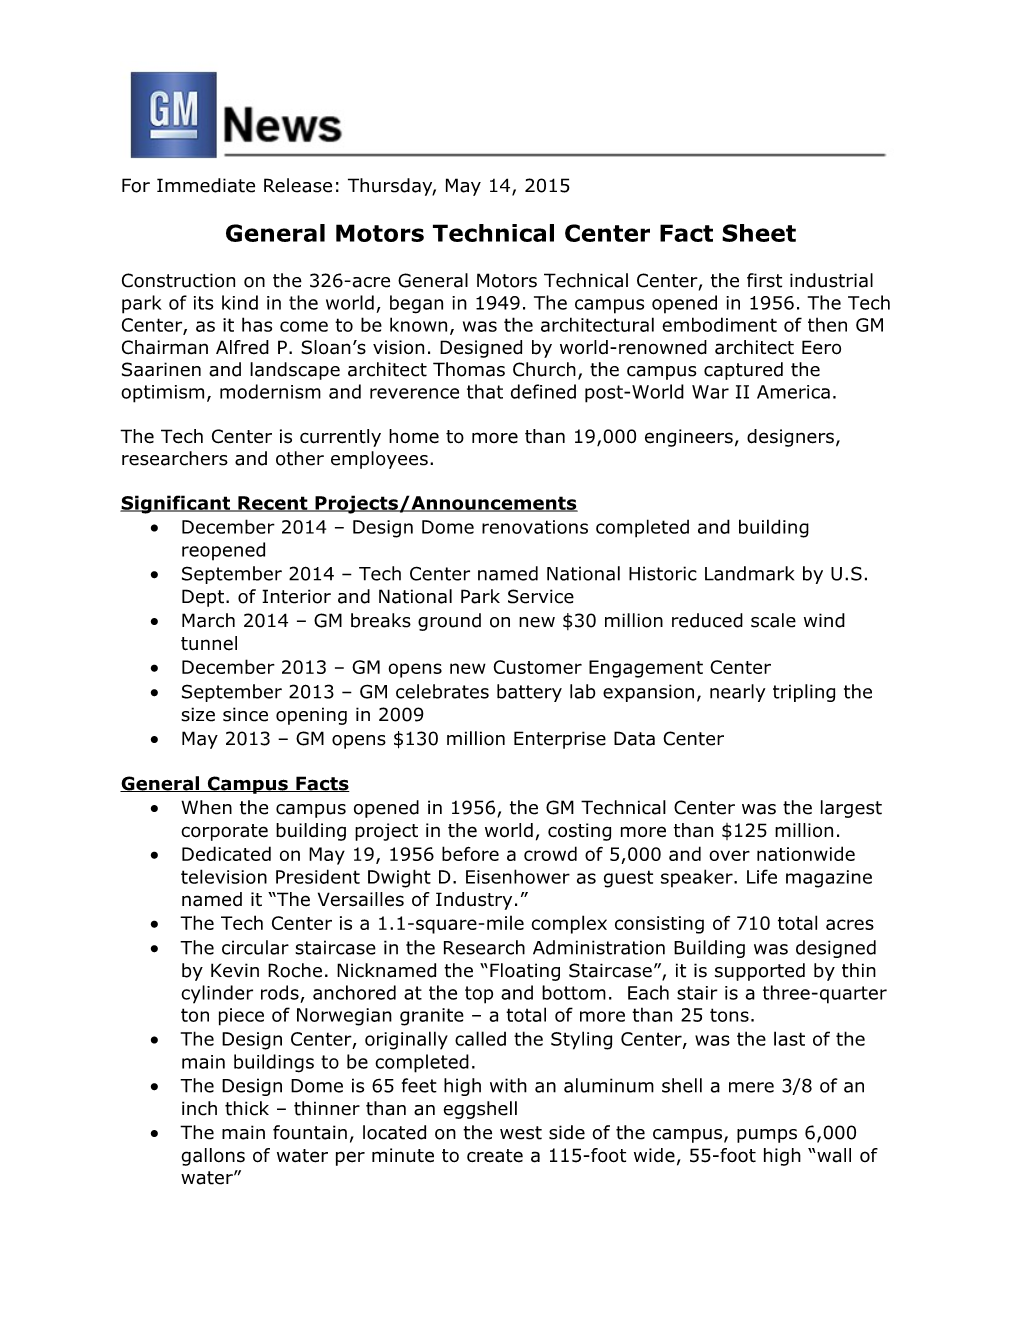 General Motors Technical Center Fact Sheet